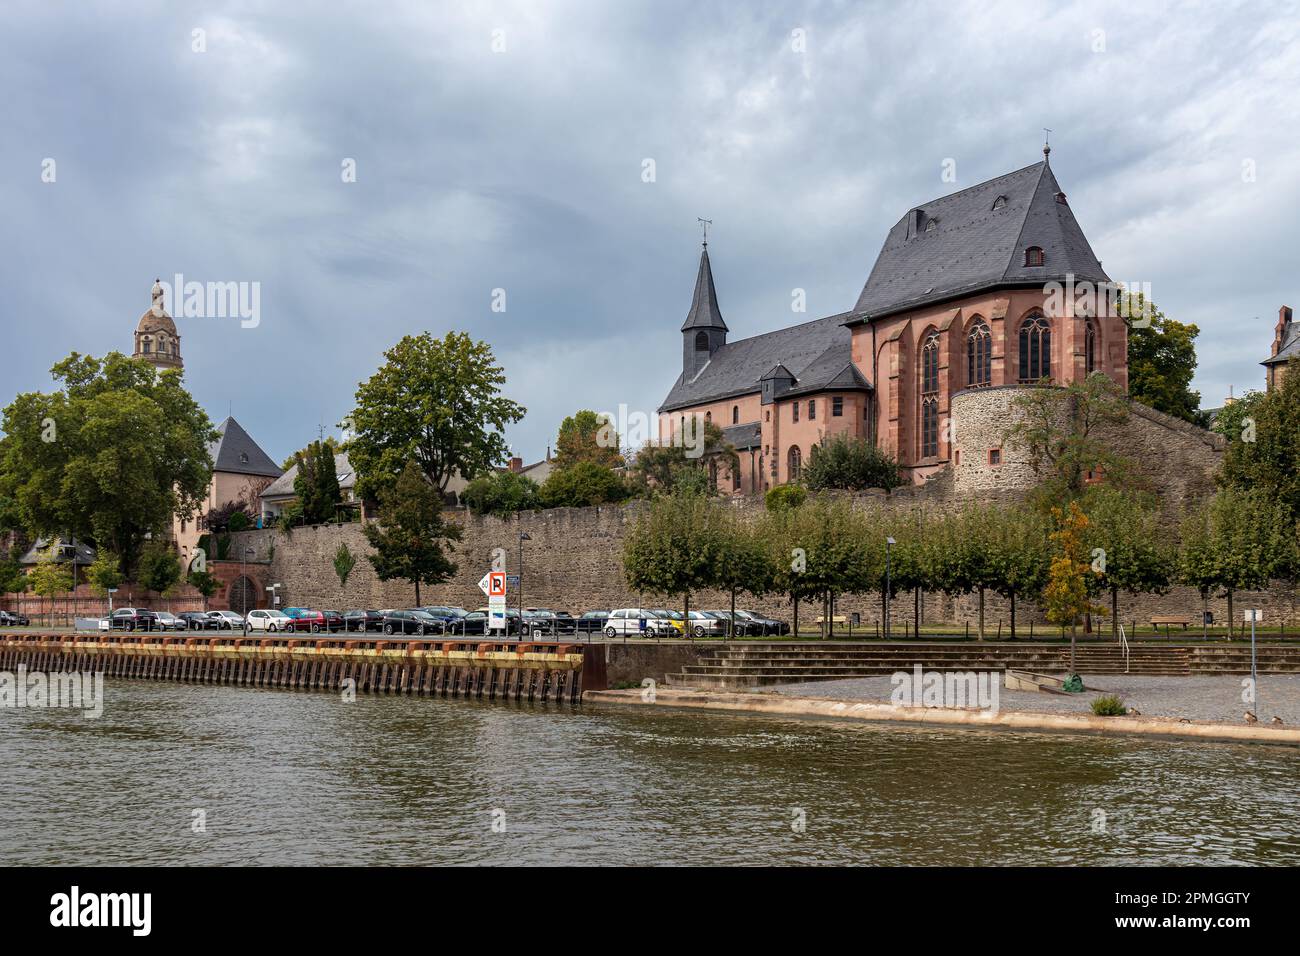 Frankfurt-Höchst am Main mit Blick auf die alte Höchsterburg und die Carolingian Saint Justin's Kirche, das älteste Gebäude in Frankfurt am Main Stockfoto